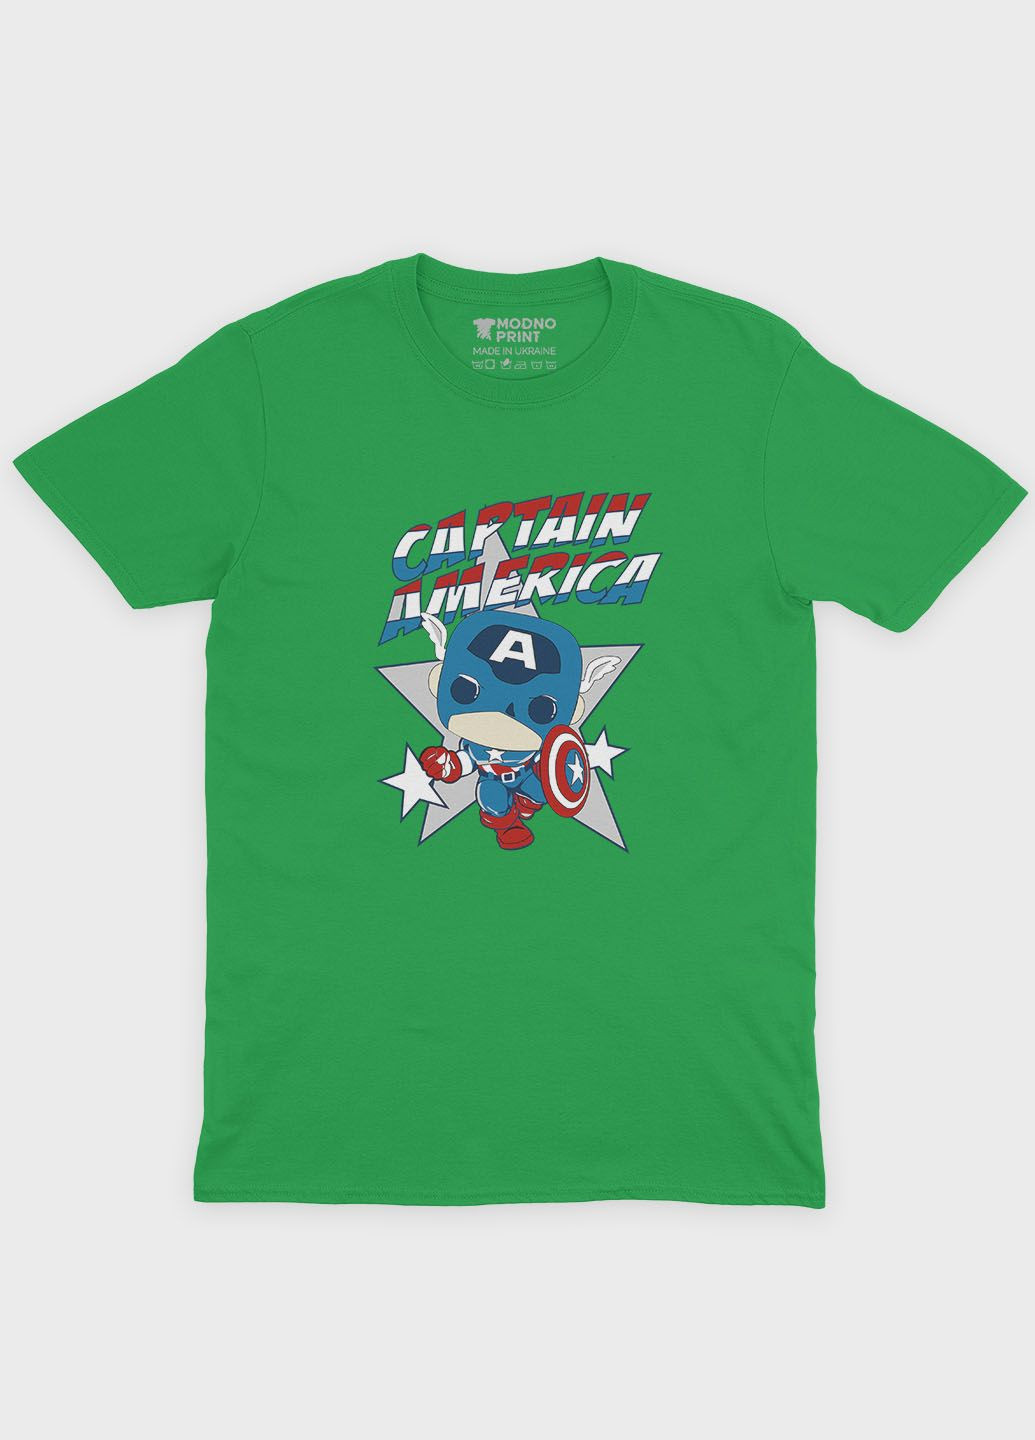 Зелена демісезонна футболка для хлопчика з принтом супергероя - капітан америка (ts001-1-keg-006-022-006-b) Modno